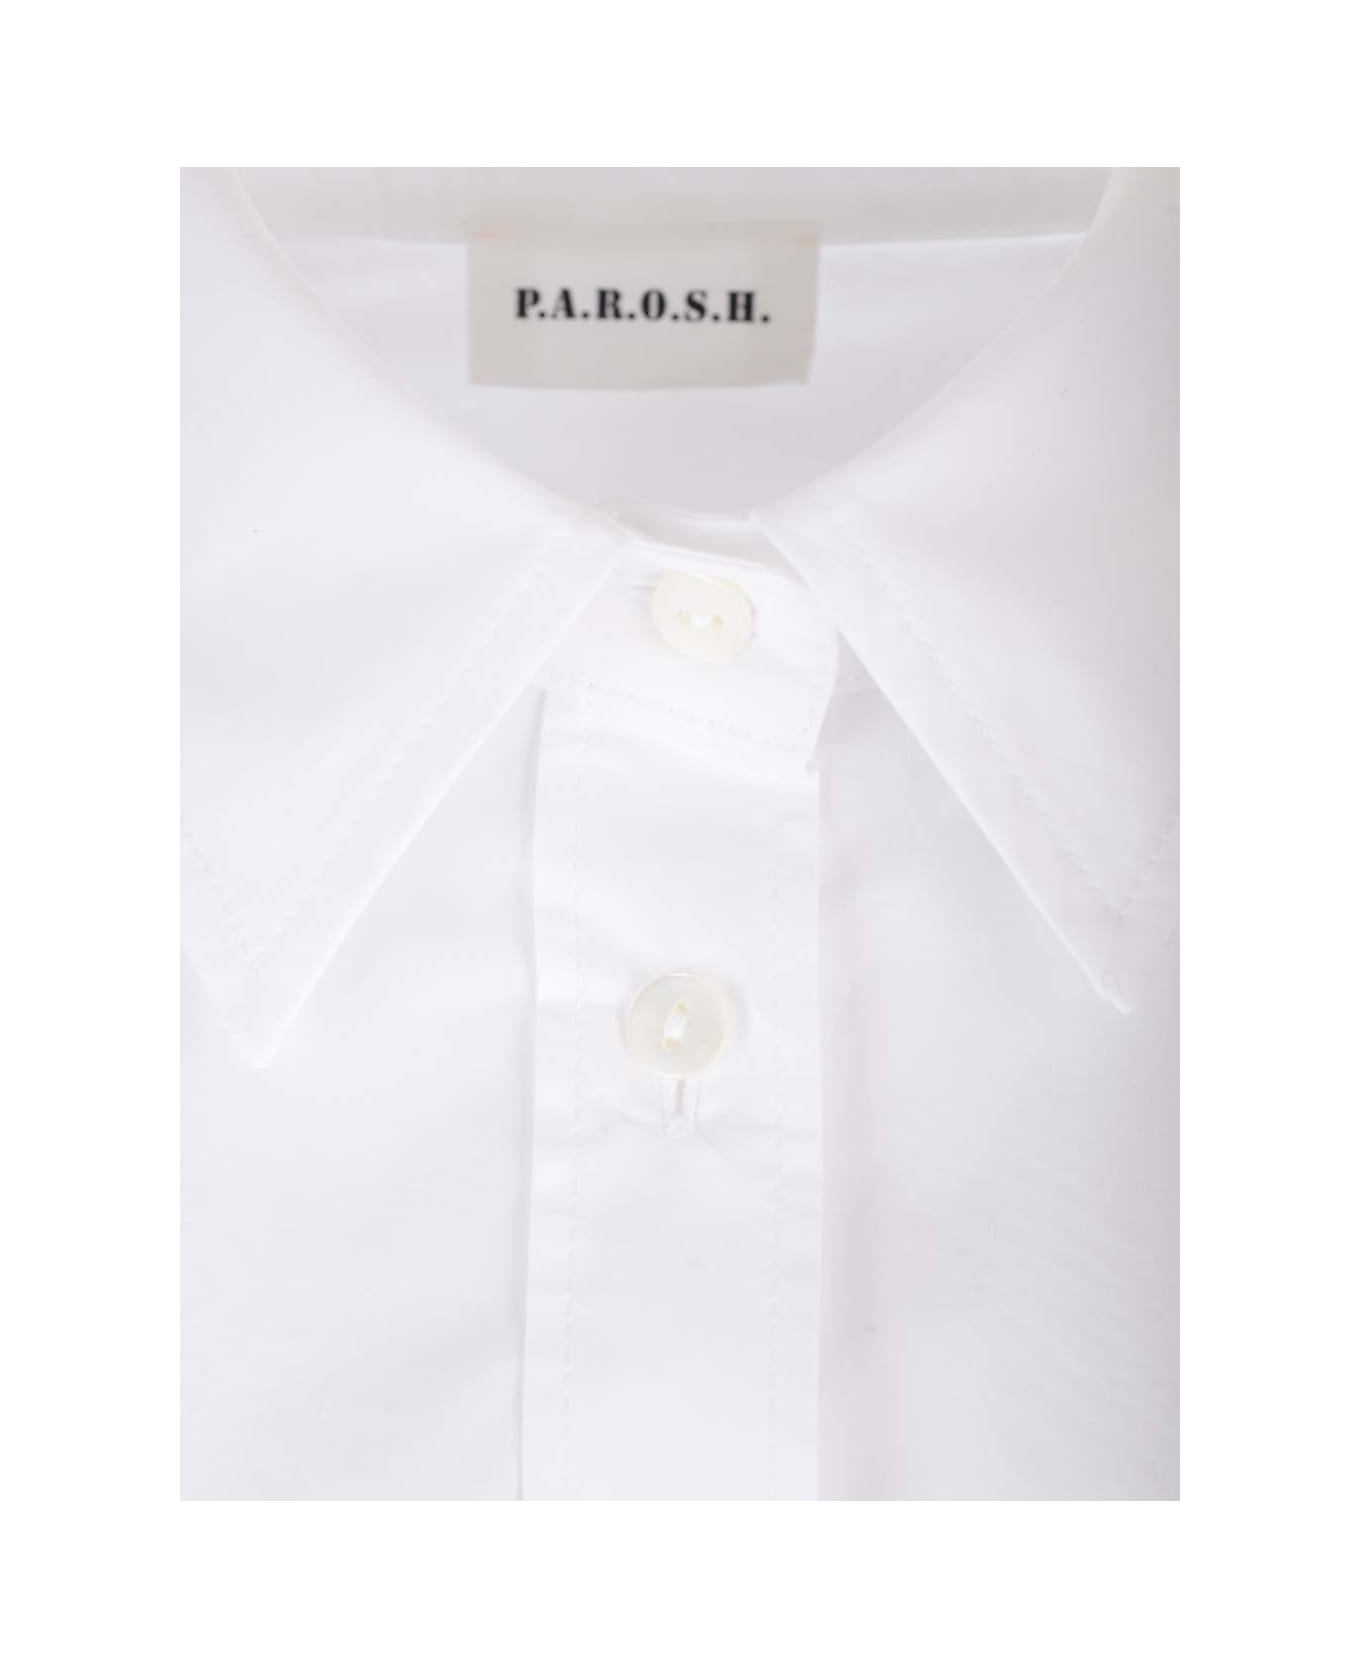 Parosh White Cotton Shirt - Bianco シャツ